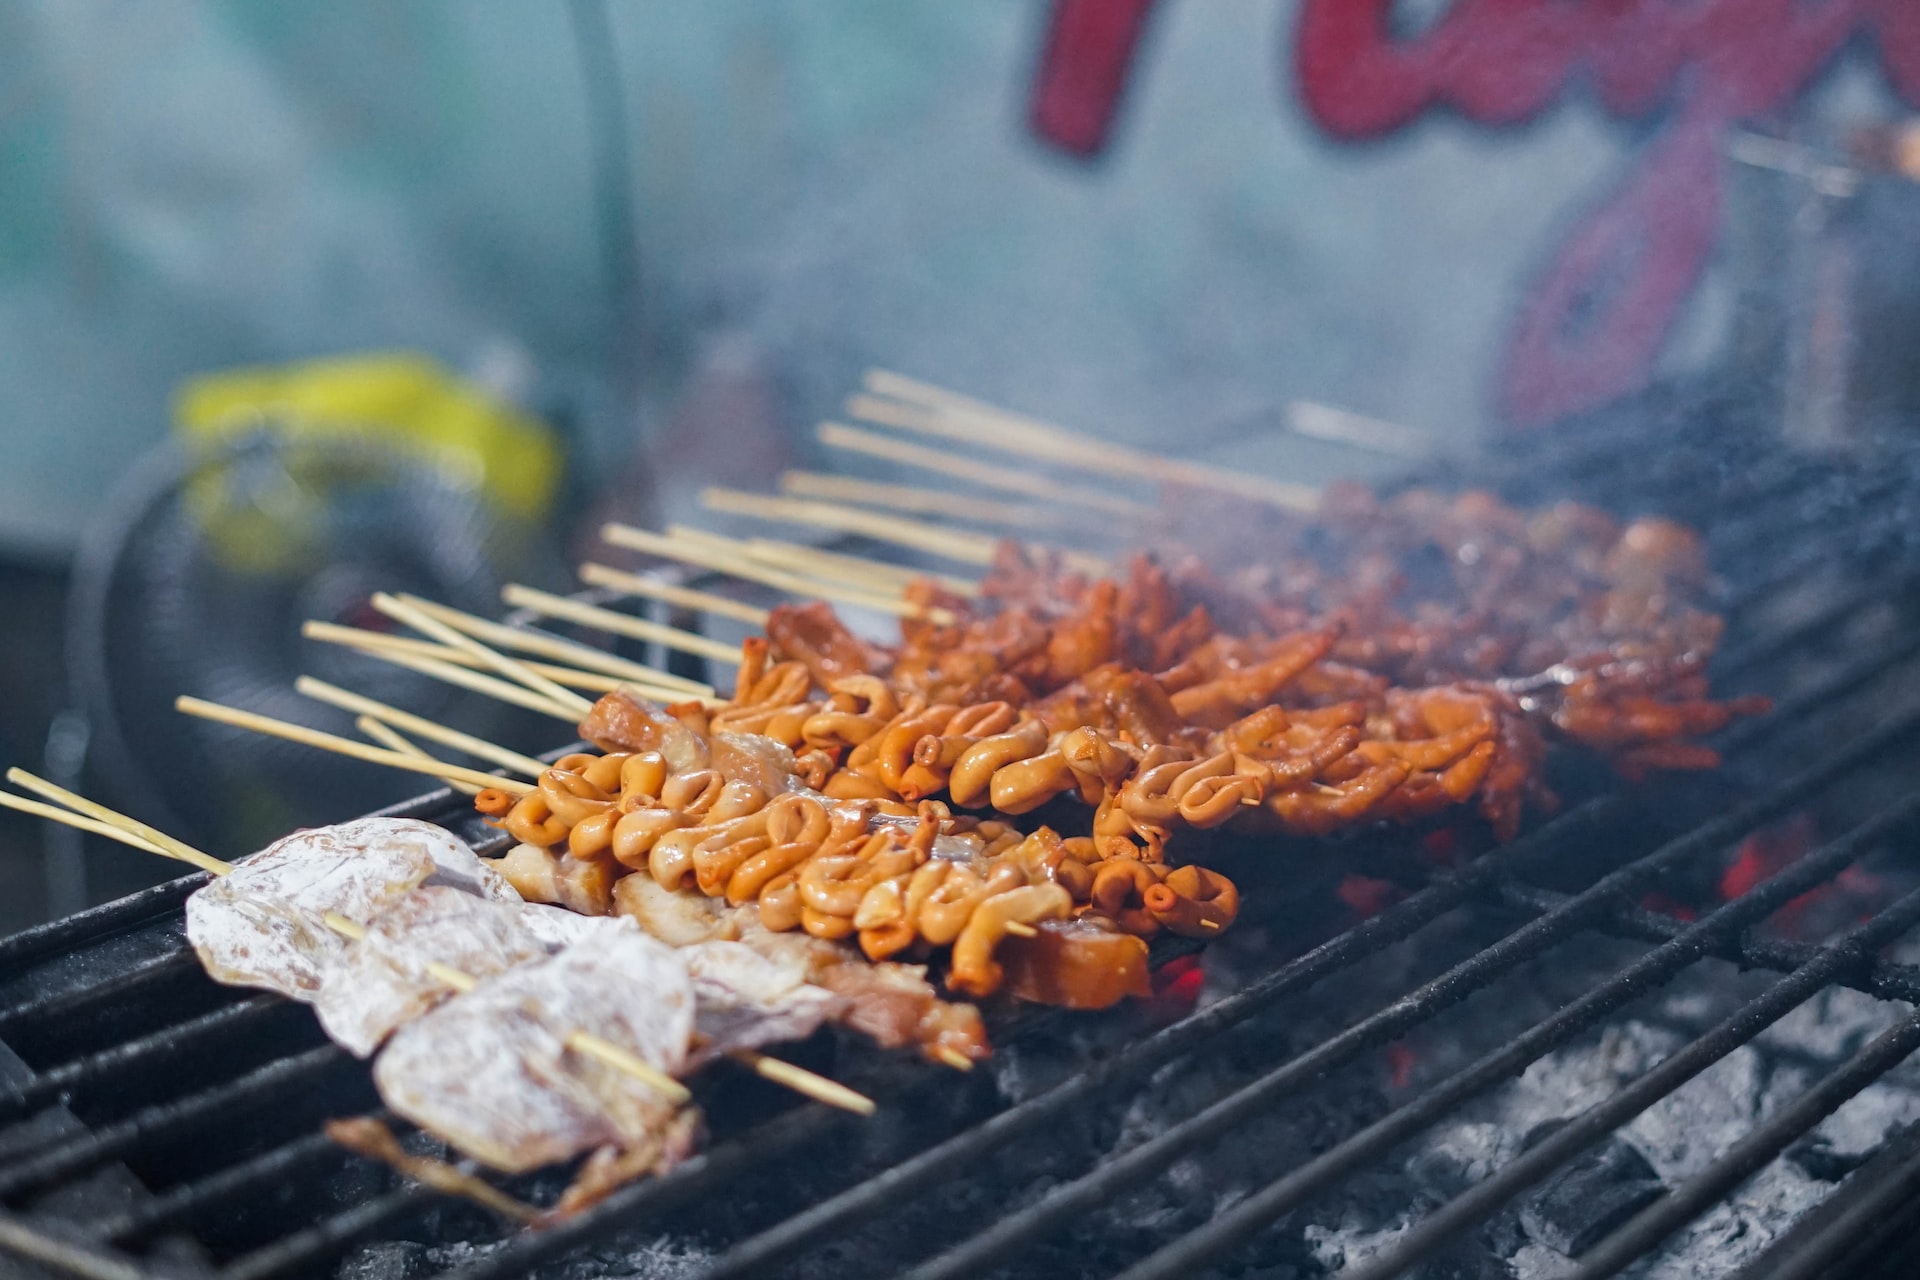 philippines street food hunt
